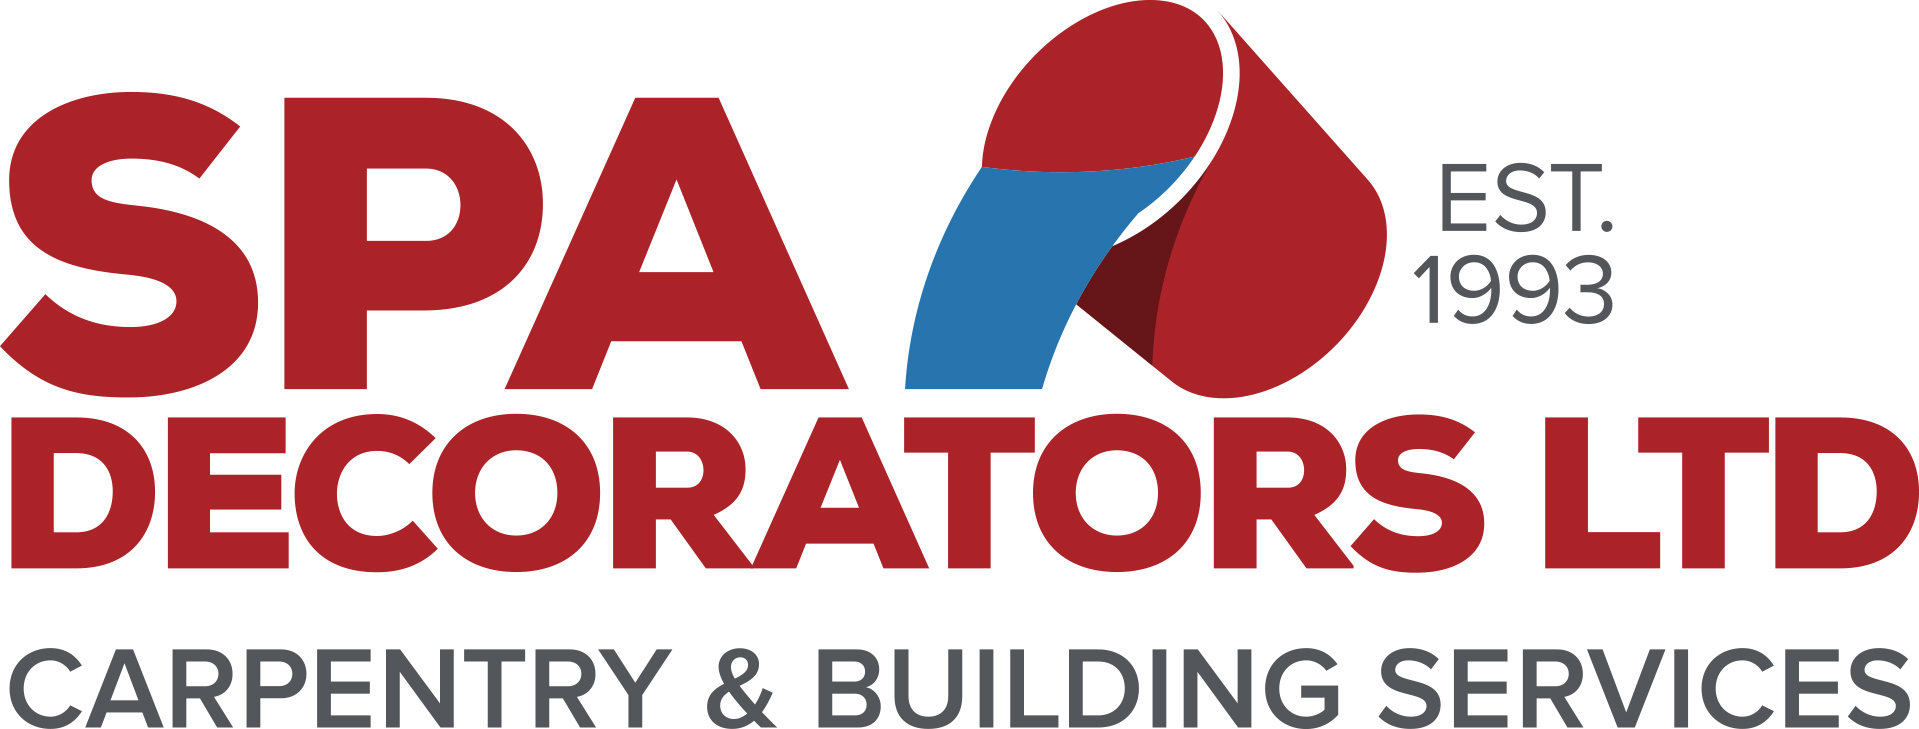 Spa Decorators LTD, EST 1993, Carpentry & Building Services logo.